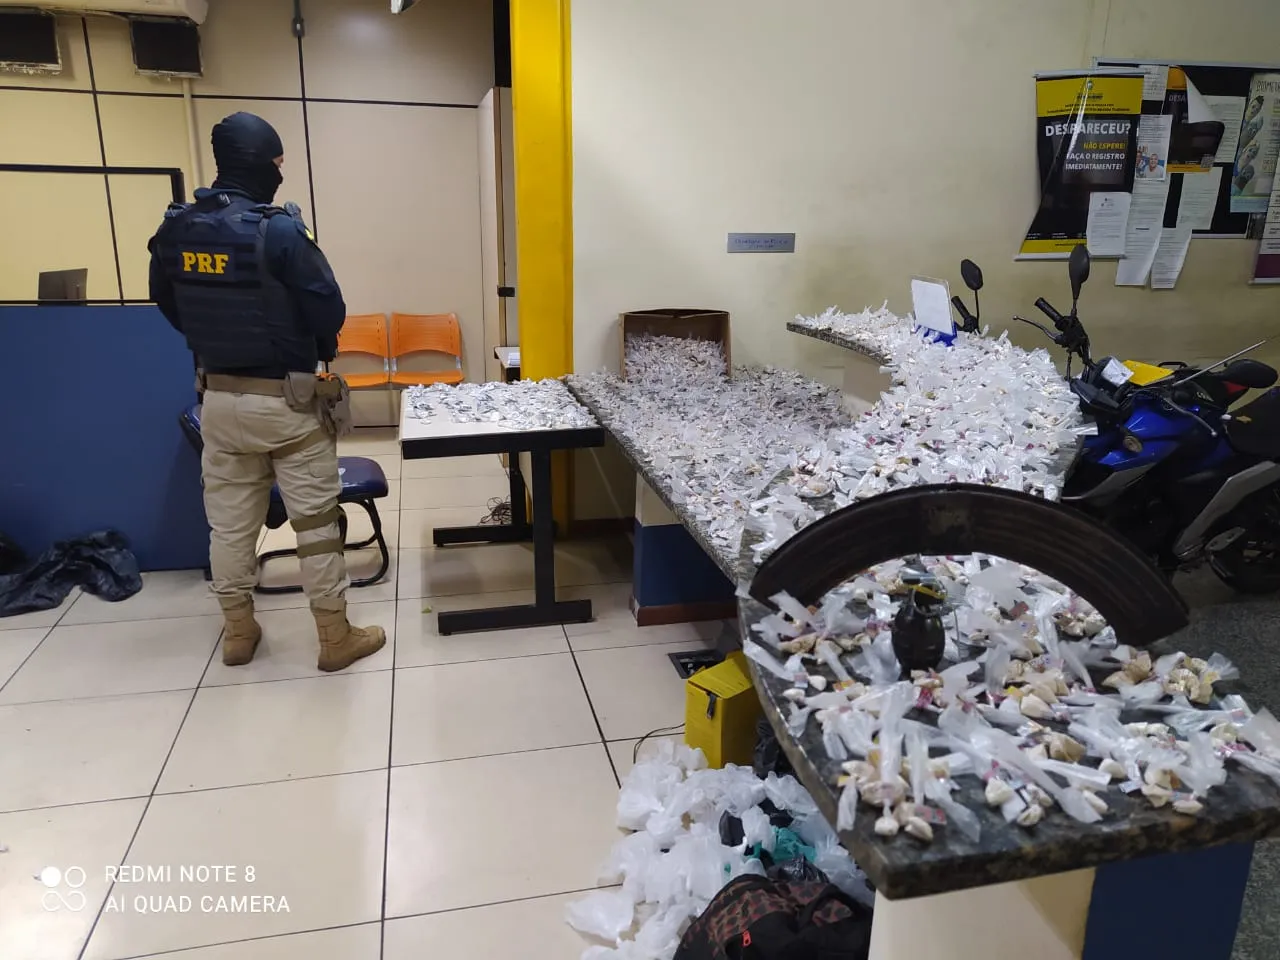 Um carregador de fuzil, uma granada defensiva, 300 "trouxinhas" de crack e 4.100 papelotes de cocaína também foram apreendidas